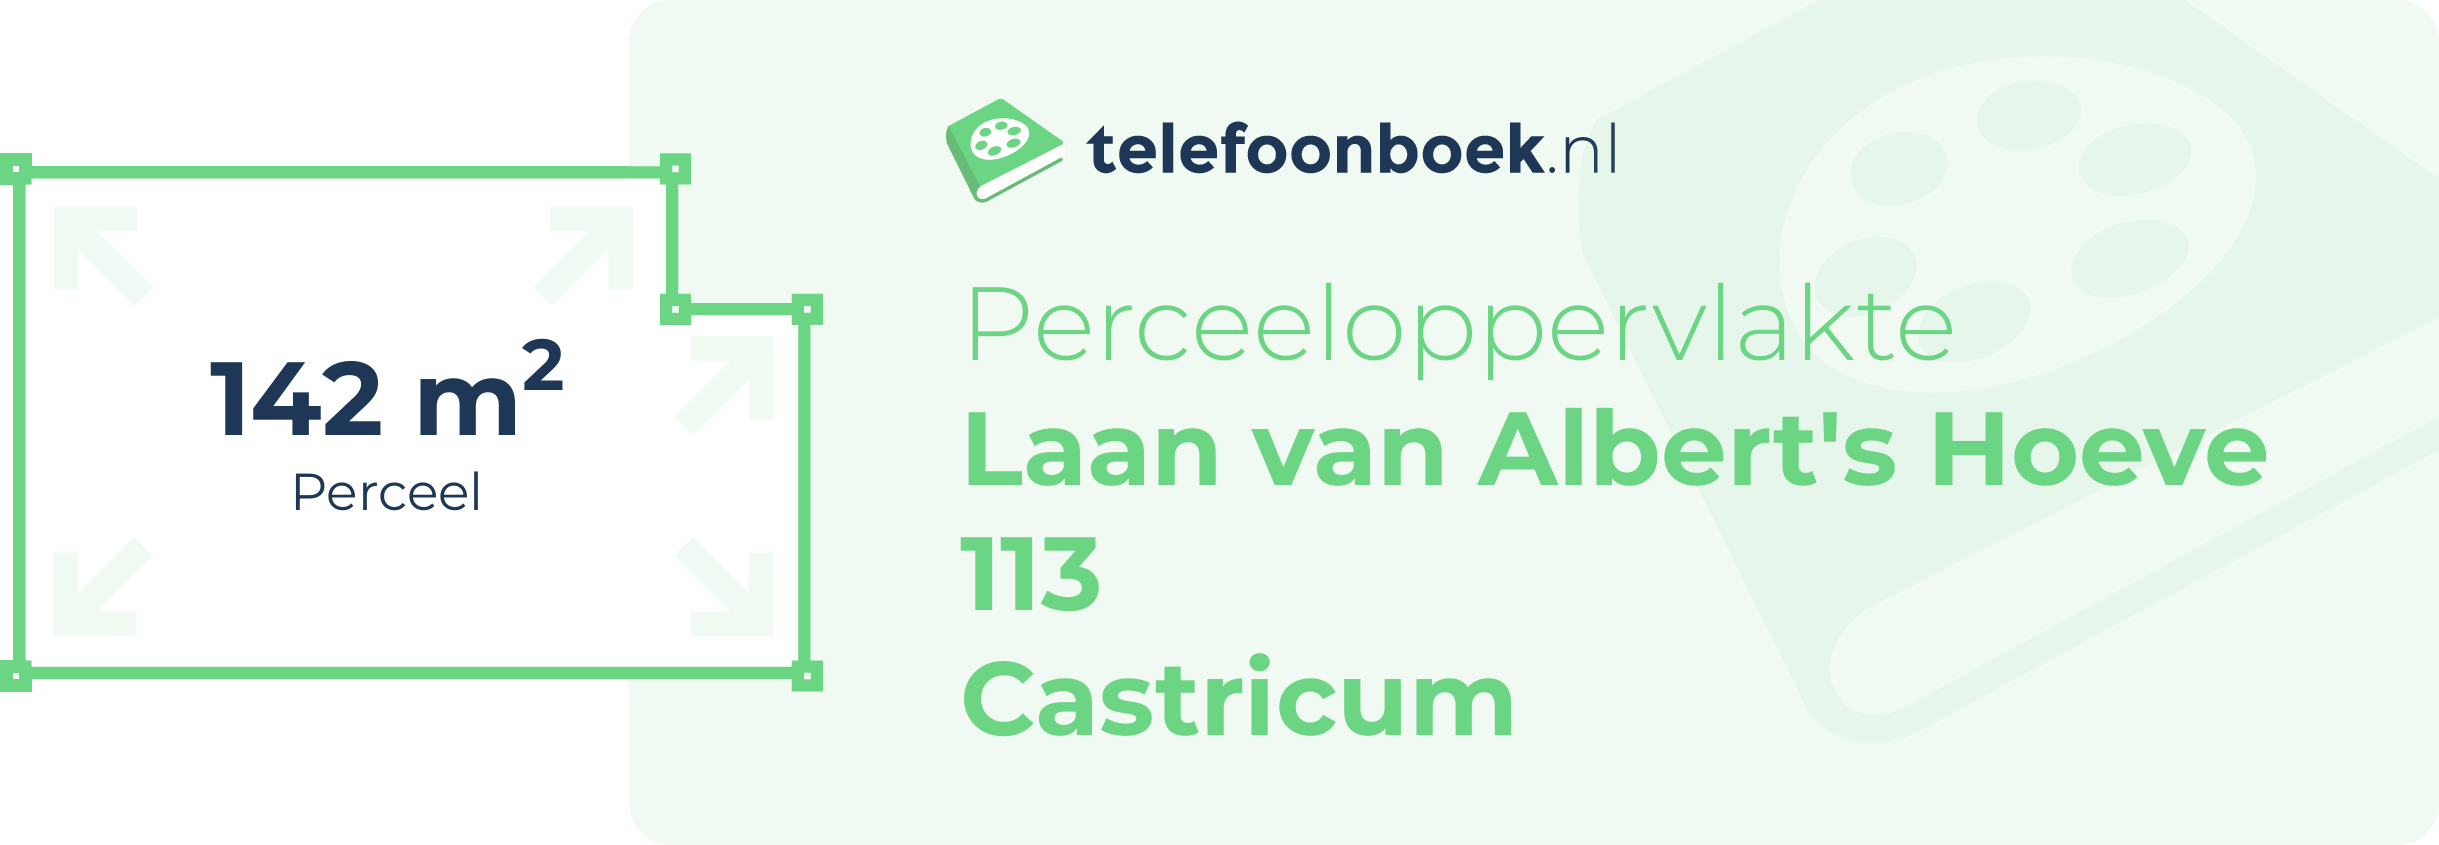 Perceeloppervlakte Laan Van Albert's Hoeve 113 Castricum